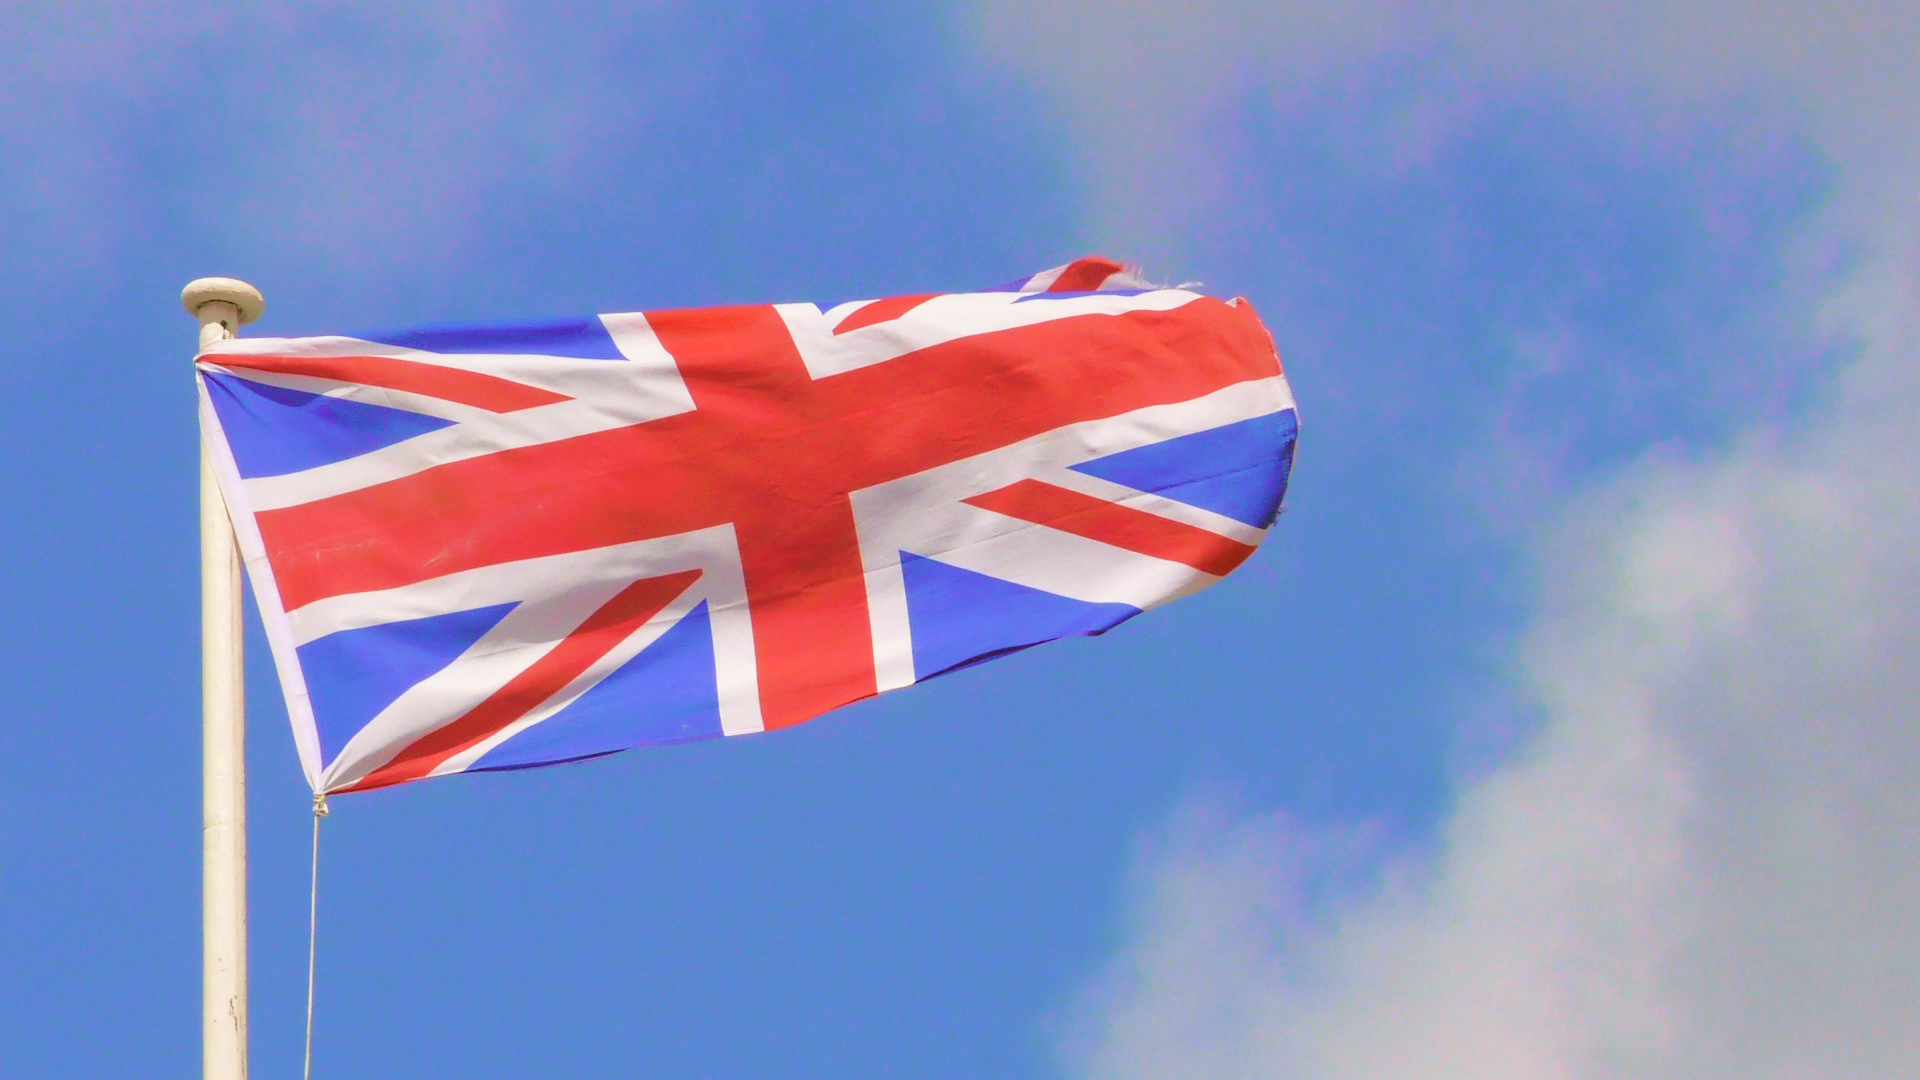 Bandera del Reino Unido en un fondo azul.